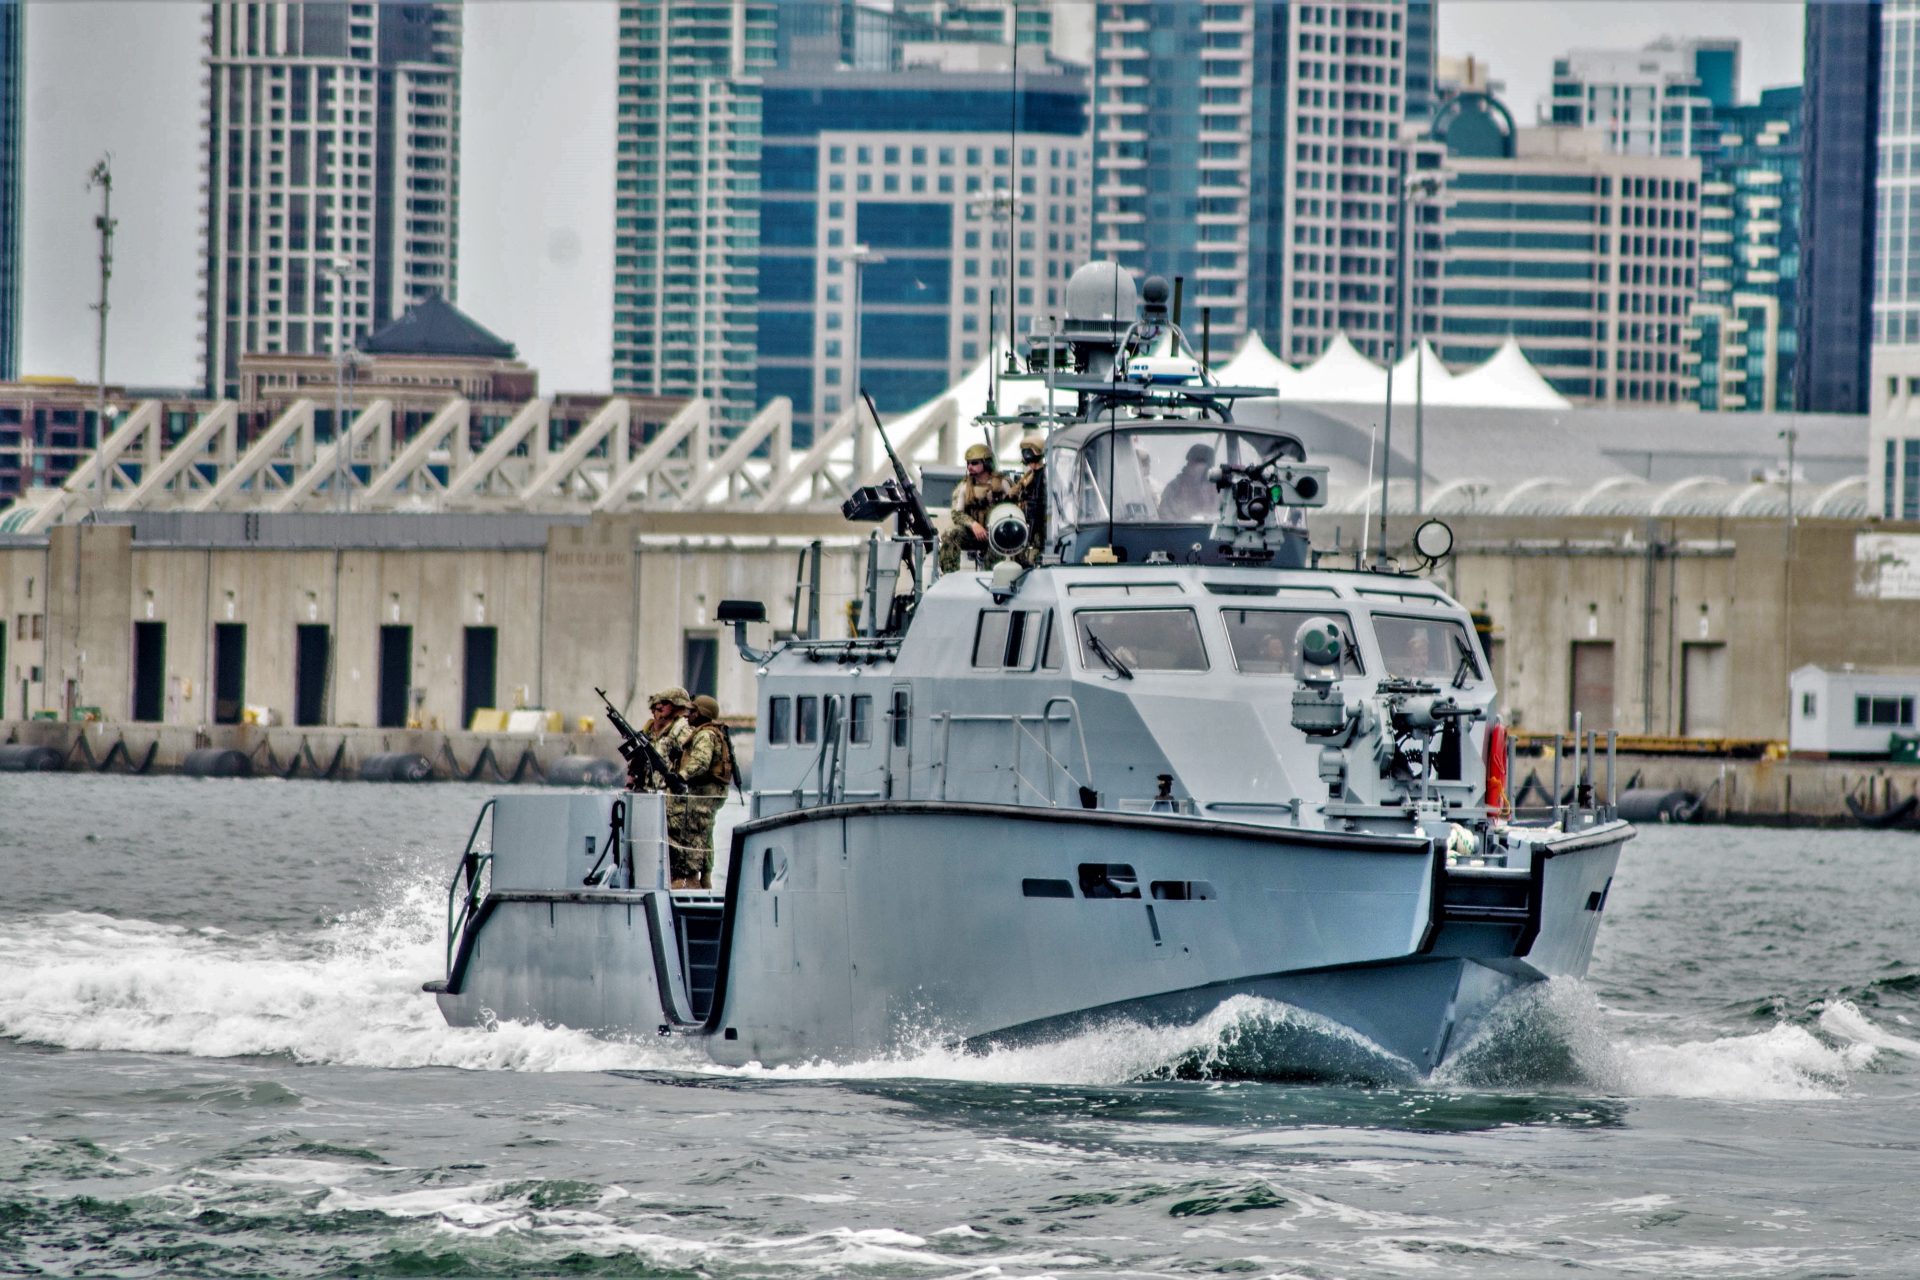 The Mark VI Patrol Boat 